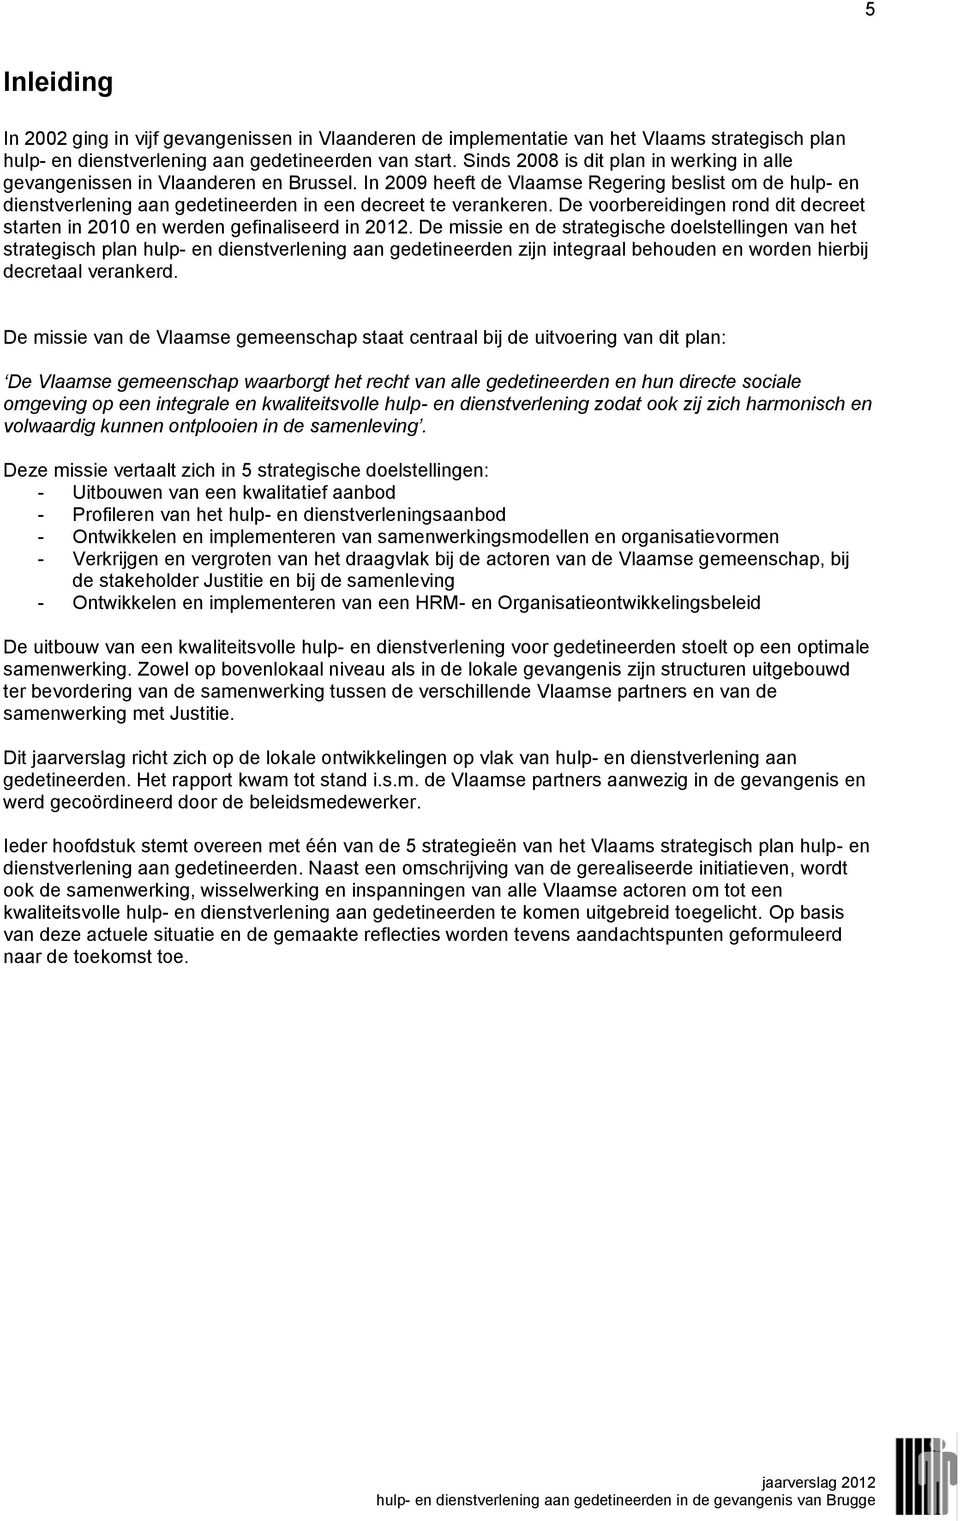 In 2009 heeft de Vlaamse Regering beslist om de hulp- en dienstverlening aan gedetineerden in een decreet te verankeren.